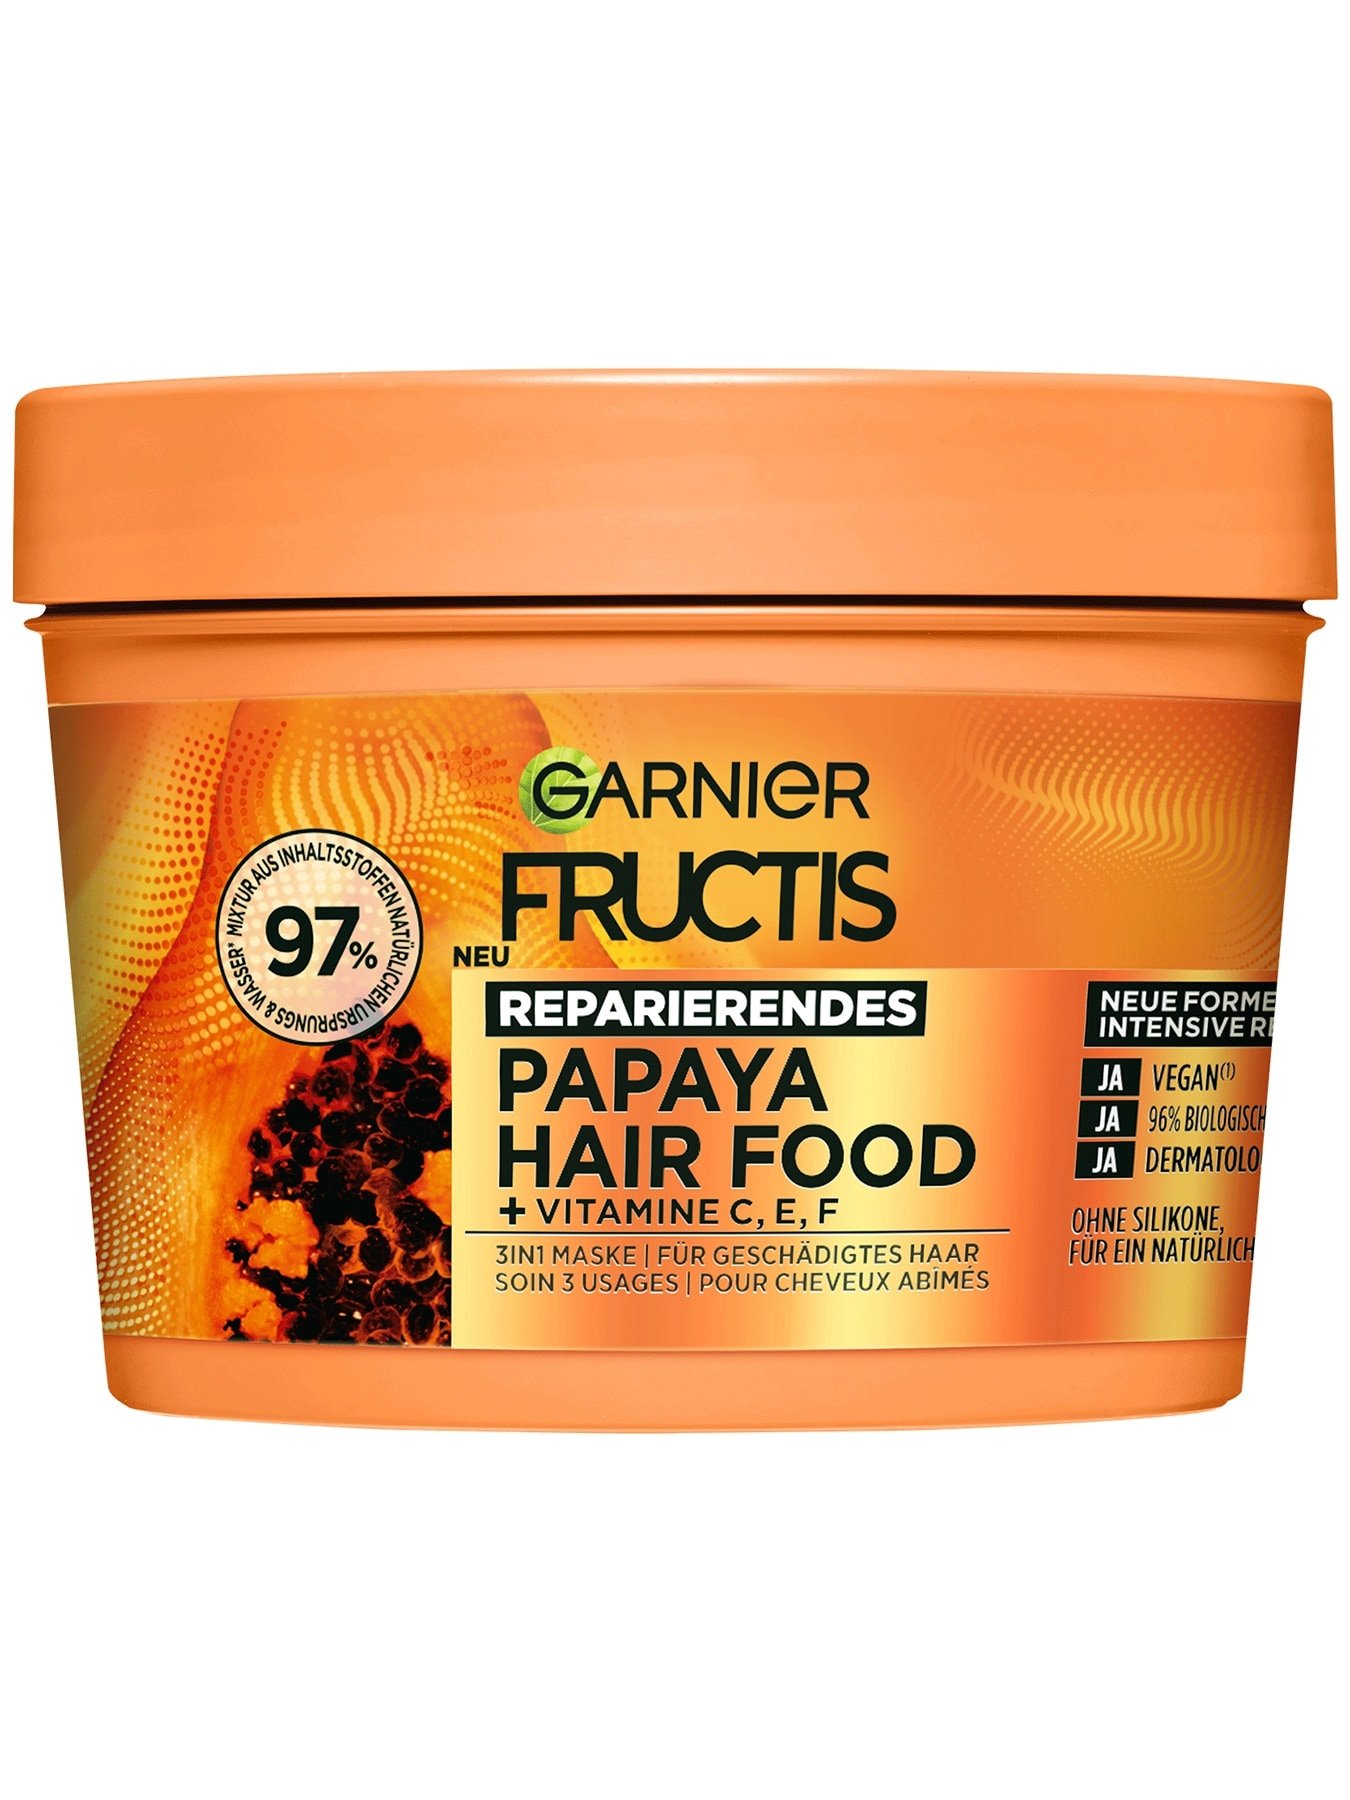 Fructis 3in1 Maske für geschädigtes Haar angereichert mit Papaya - Produktabbildung